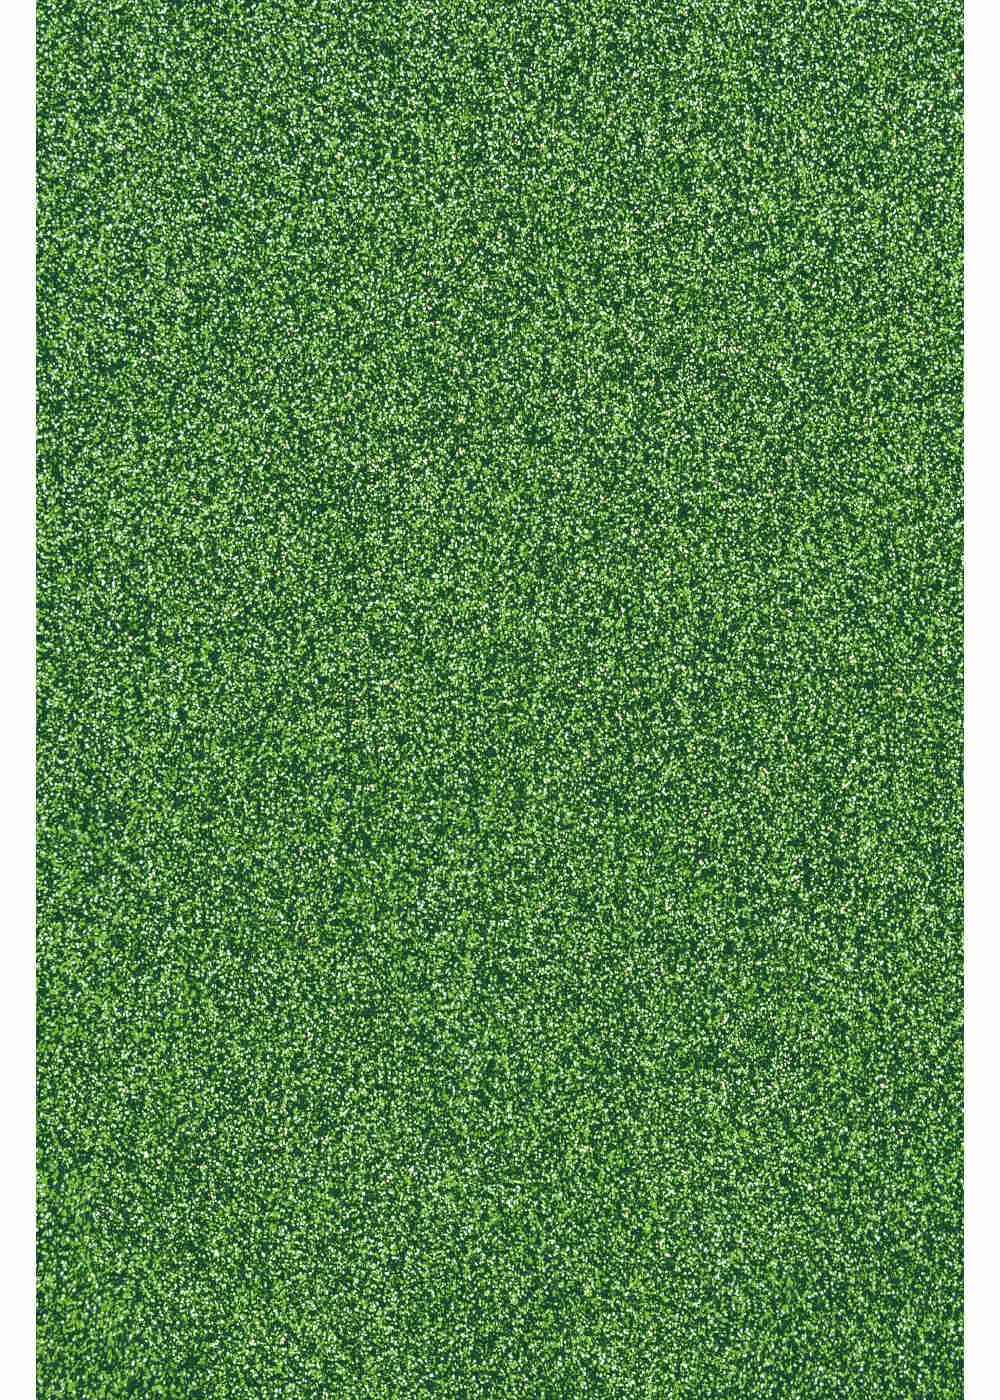 Transferfolie/Textilfolie perfekt Green Light zum zum Transparentpapier Plottern Glitzer Hilltop Aufbügeln,